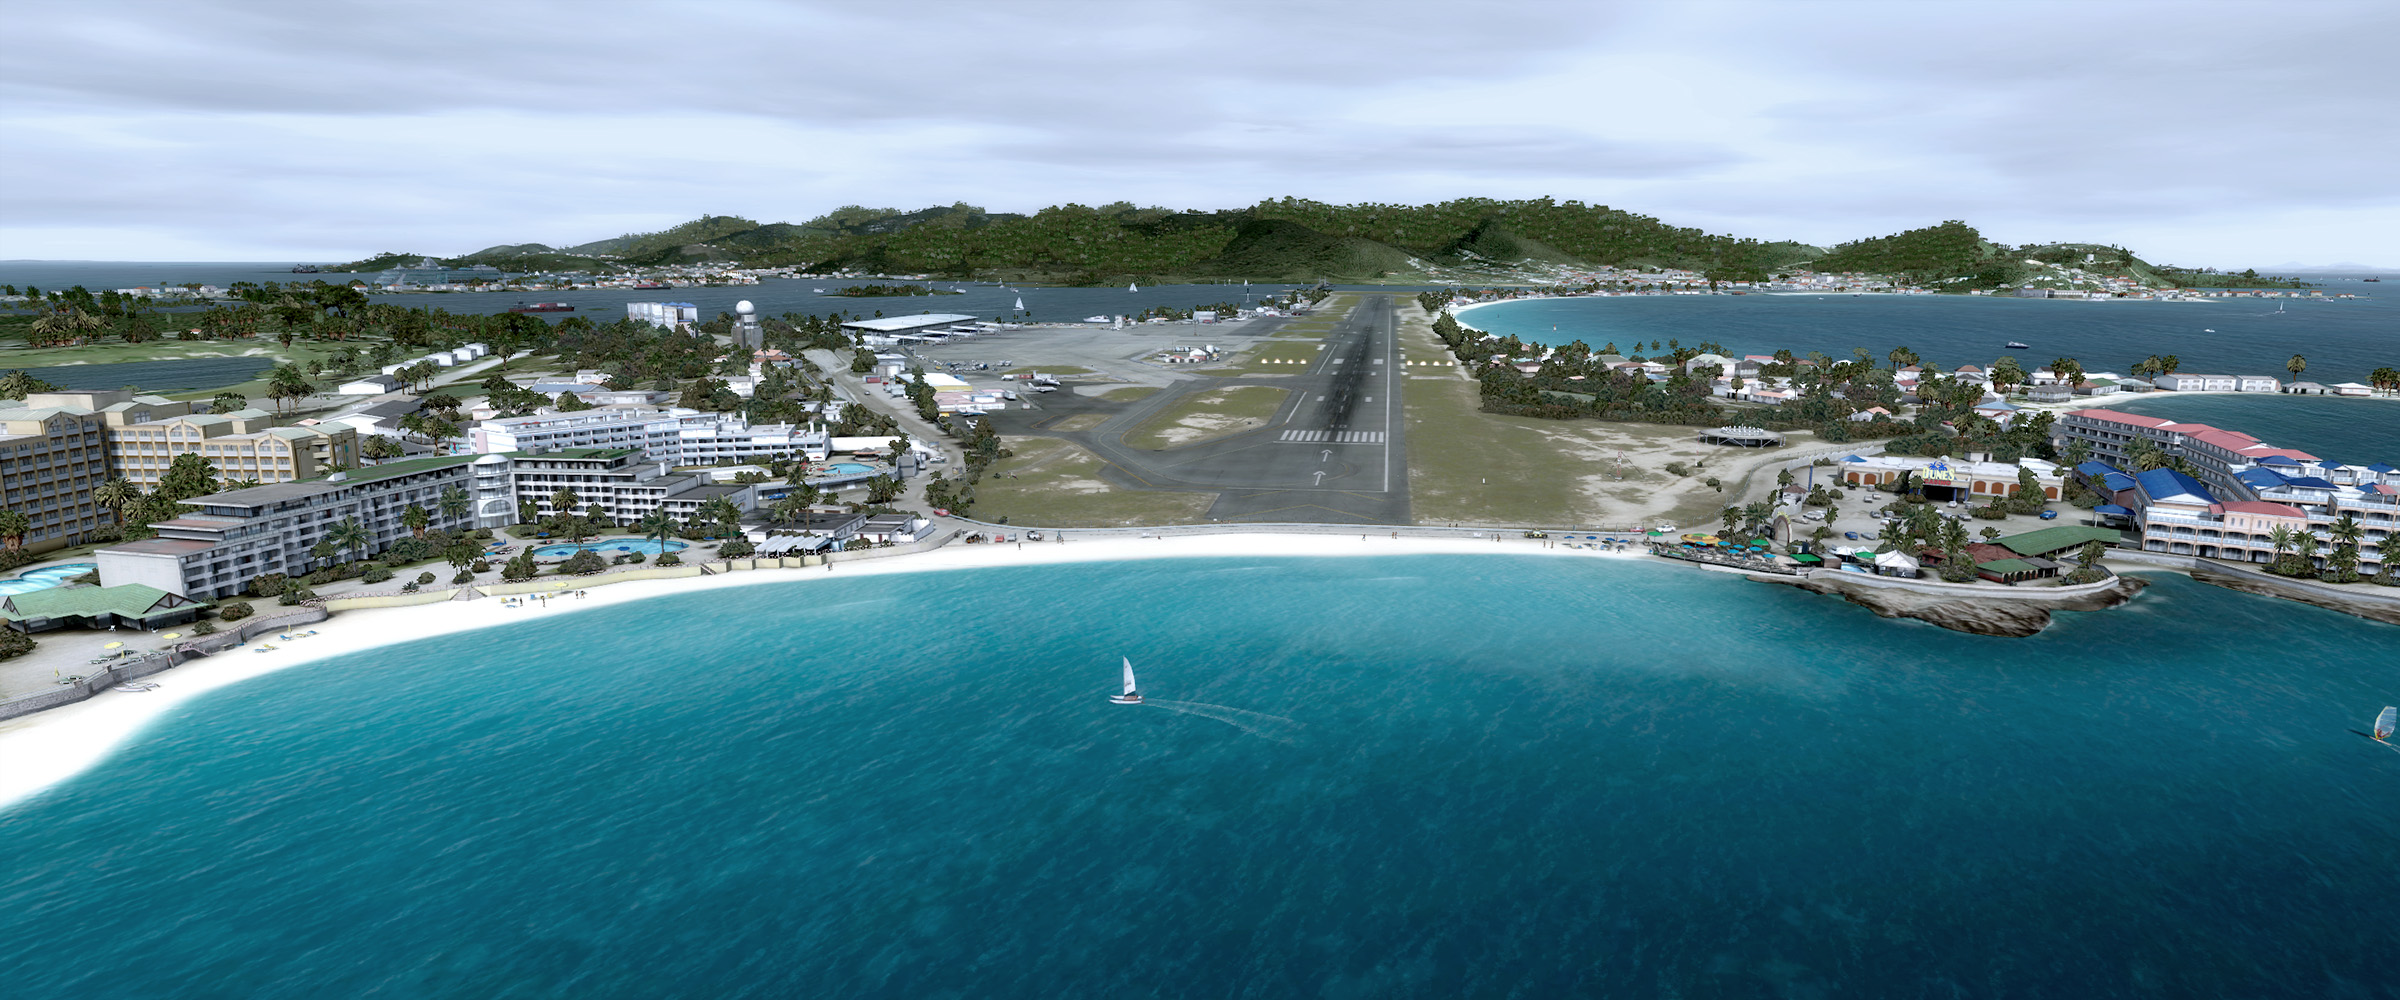 الأن مطار St. Maarten أصعب مطار Tncm1